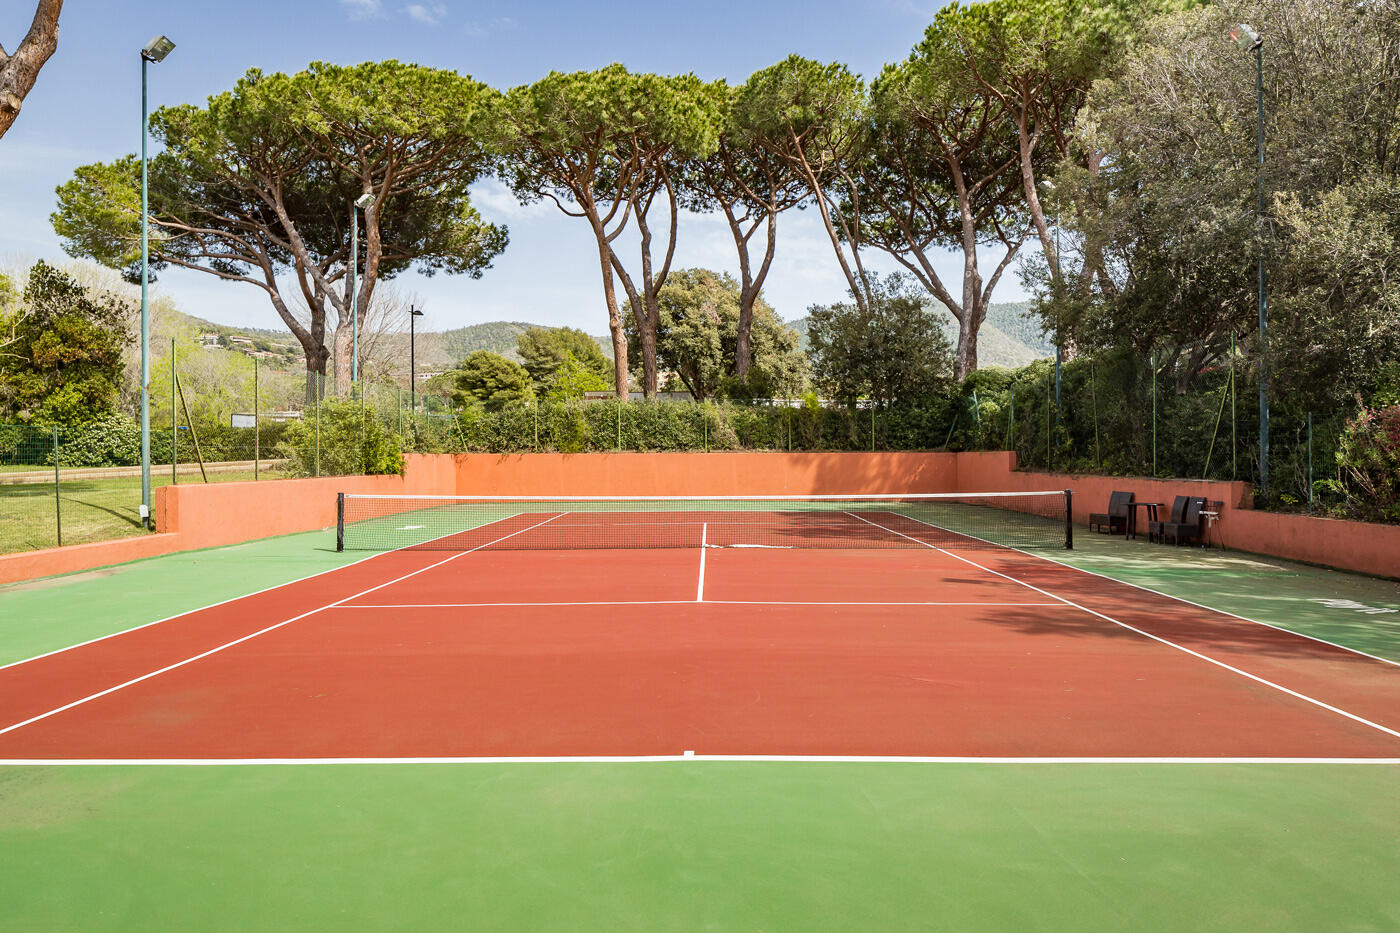 Tennisplatz mit rot-grünem Boden umzingelt von Bäumen